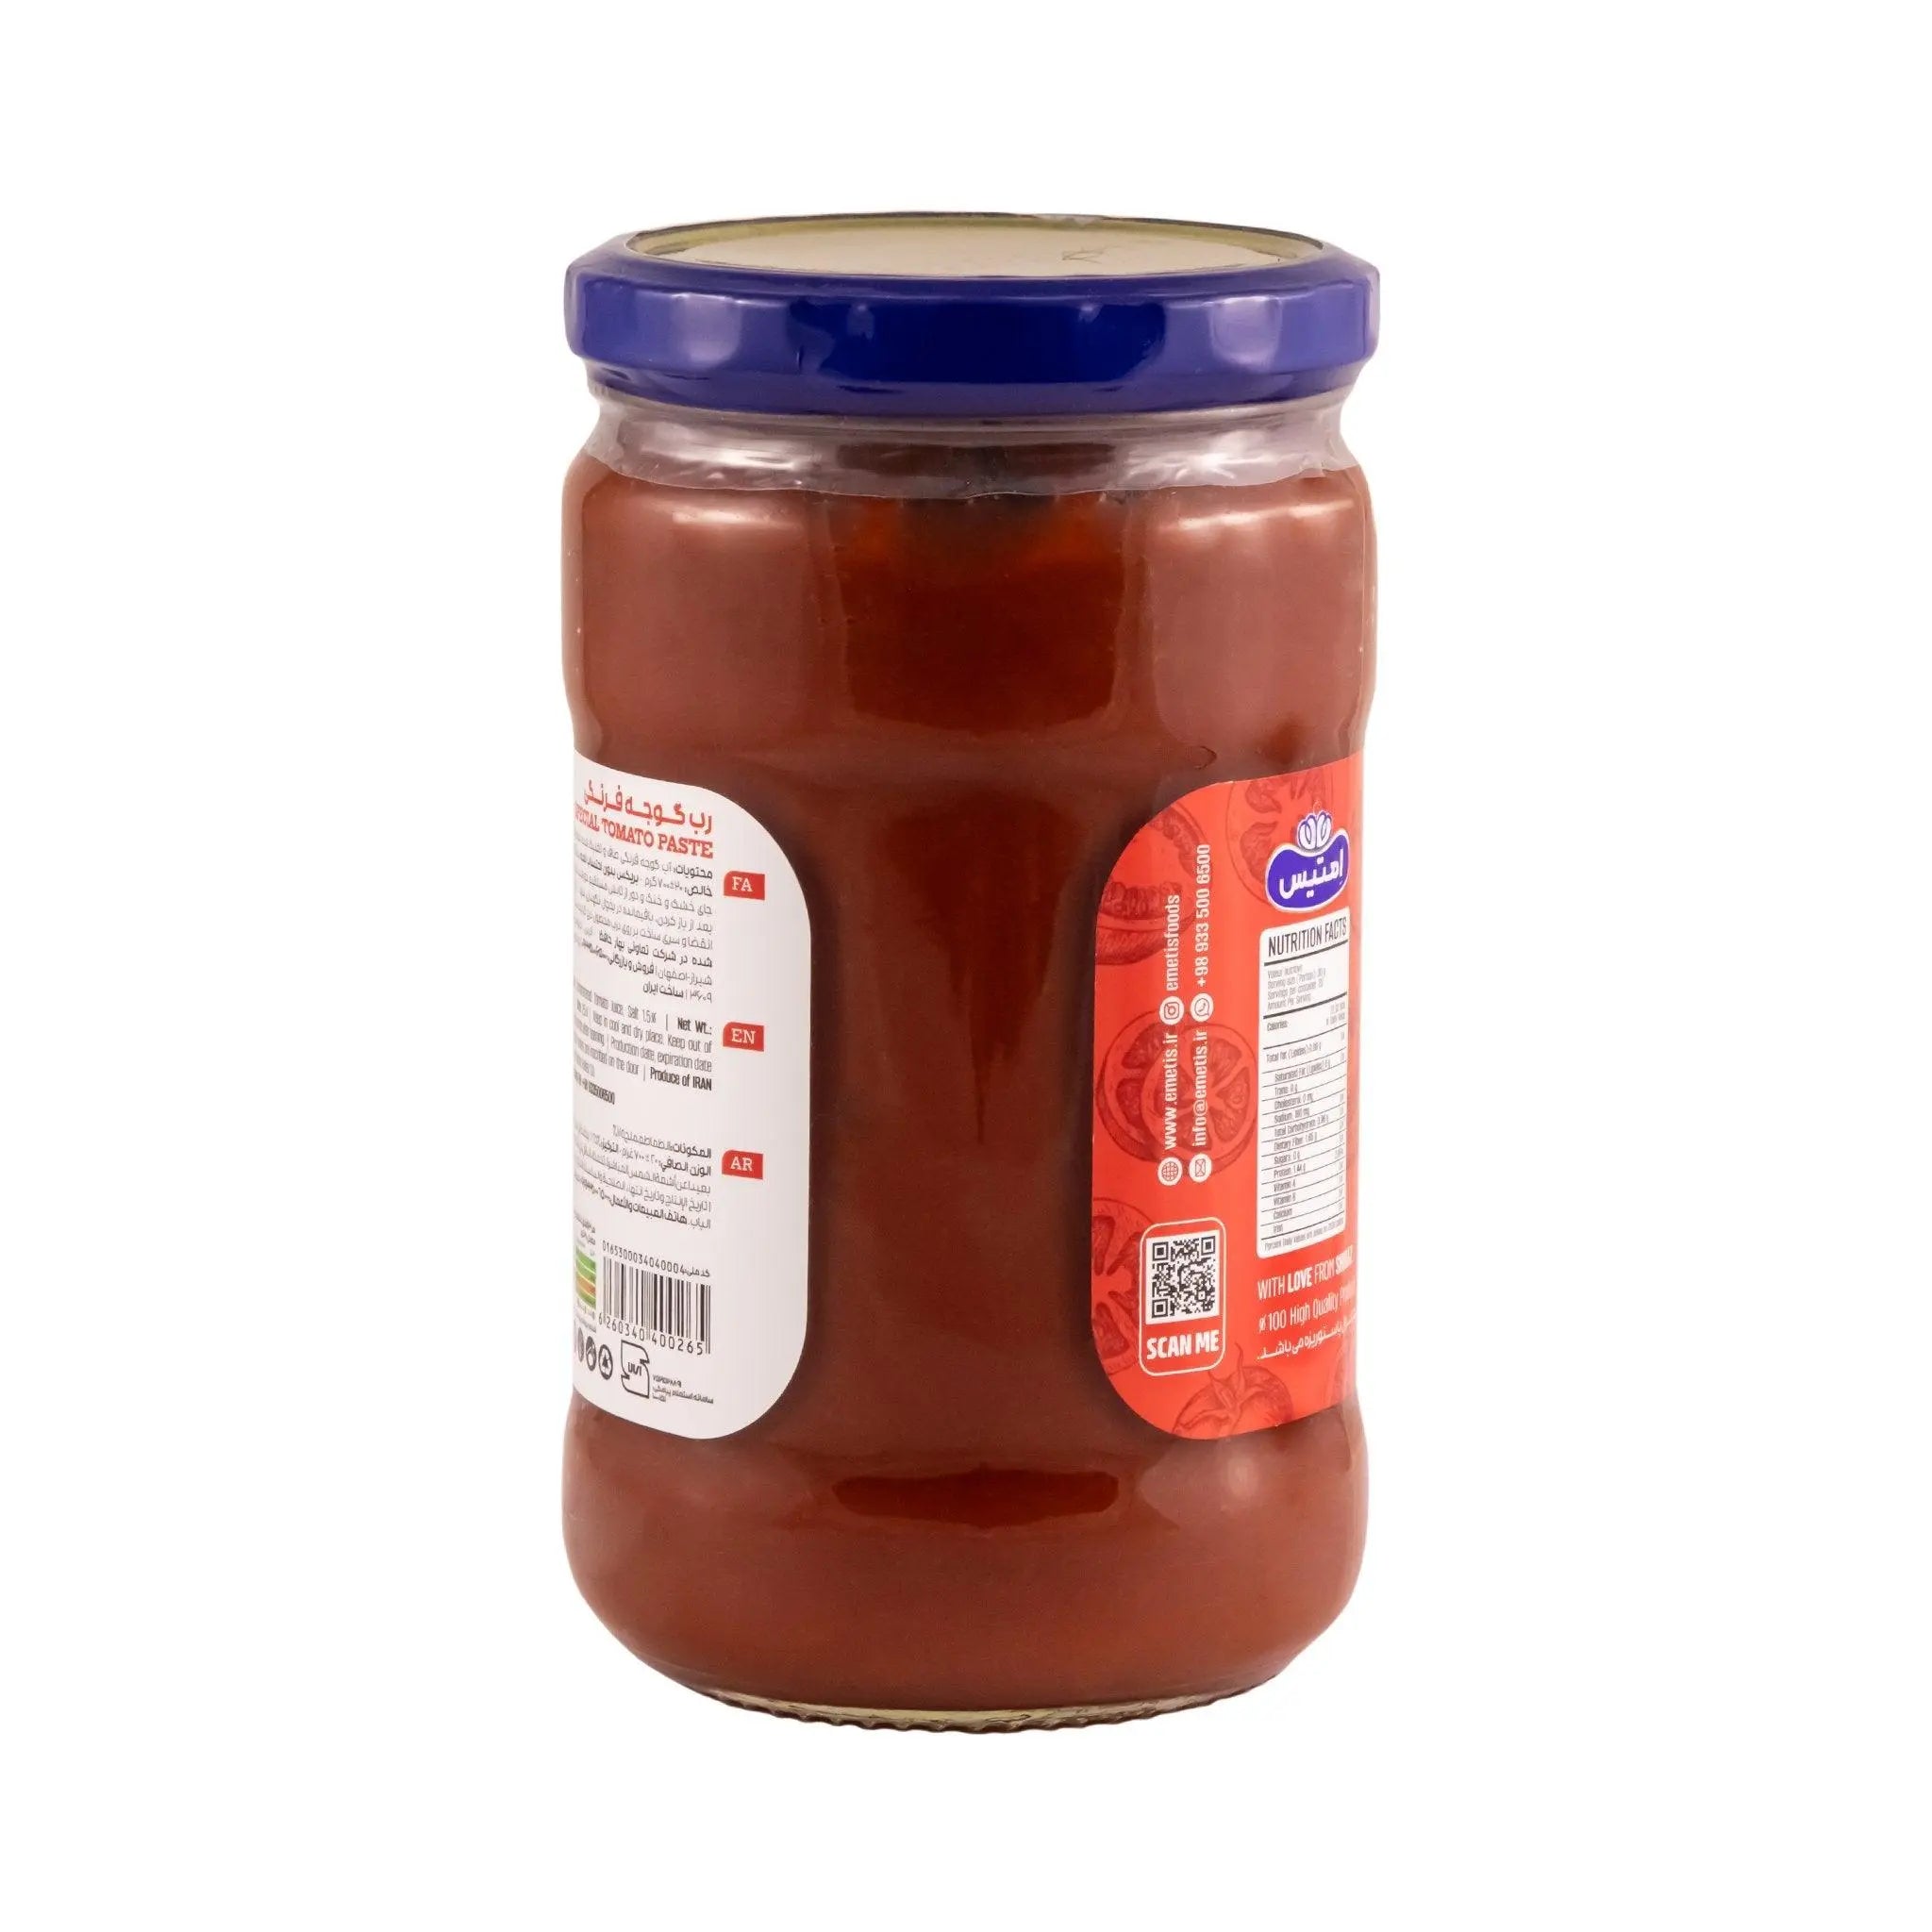 Emetis Special Tomato Paste - Glass Jar -700g x 12 (1 carton) Marino Wholesale